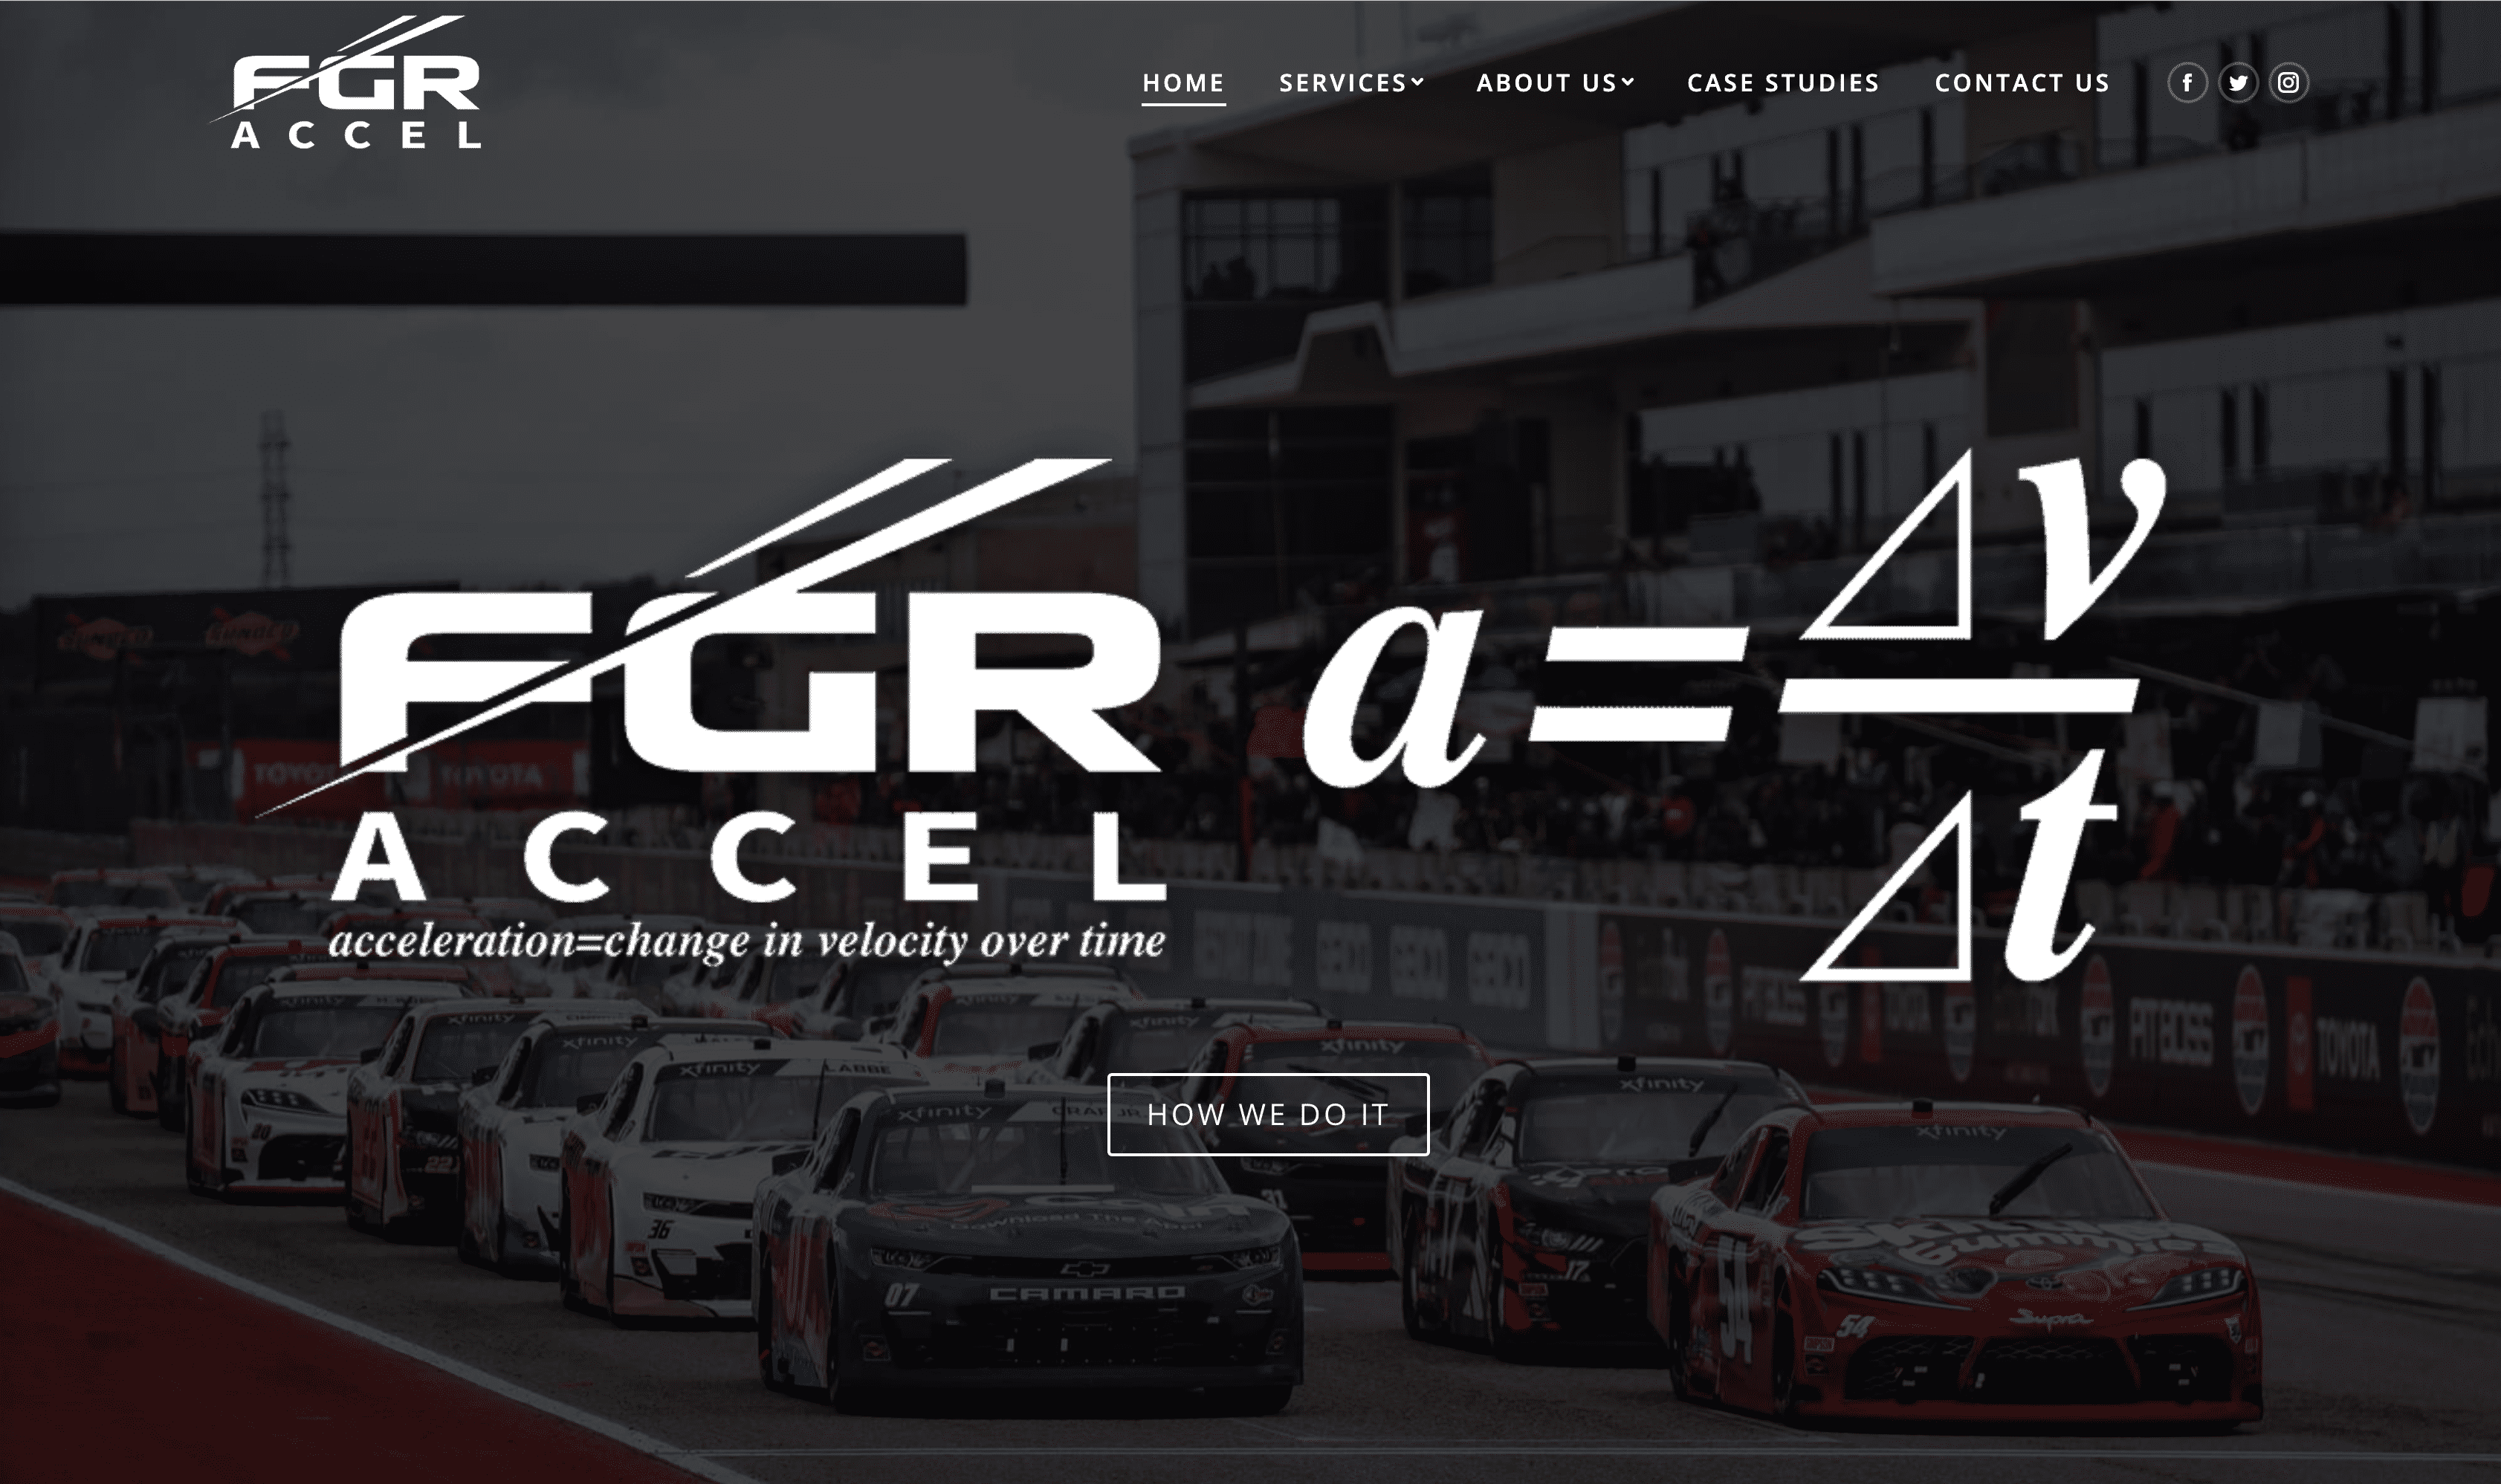 FGR accel website design services